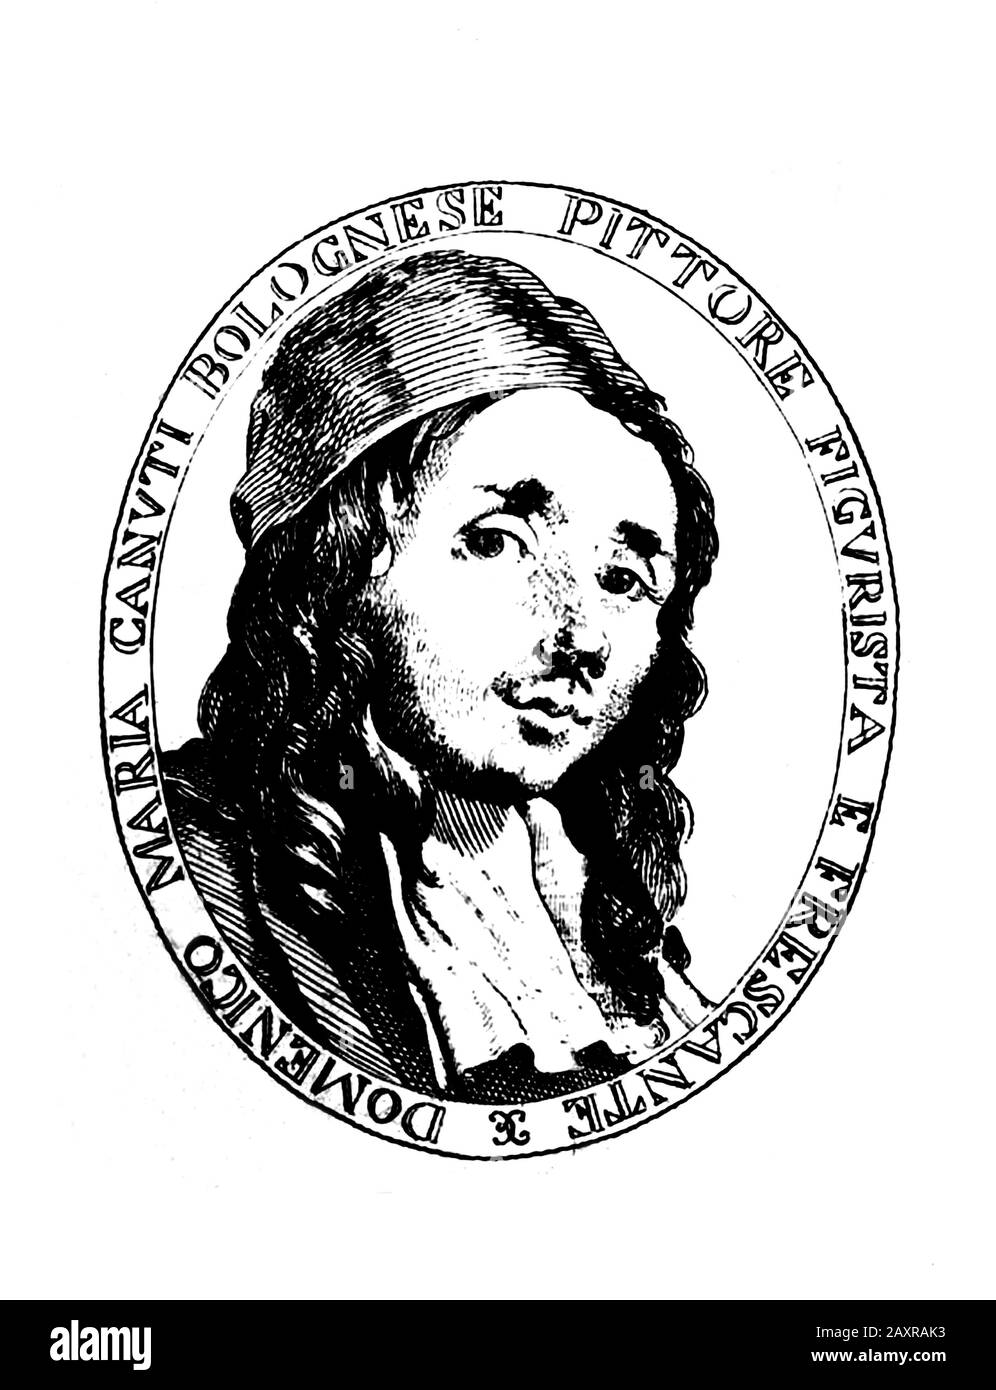 1.680 Ca, ITALIEN: Der zelebrende italienische Barocco-Maler Domenico Maria Canuti (* 1625; † 1684) . Porträt, das im XIX Jahrhundert von Unbekannten eingraviert wurde. - PORTRÄT - RITRATTO - ARTE - BILDENDE KUNST - ARTI VISIVE - PITTORE - GRAVUR - INCISIONE - ILLUSTRATION - MALER - AUTORITRATTO - BAROQUE - ARCHIVIO GBB Stockfoto